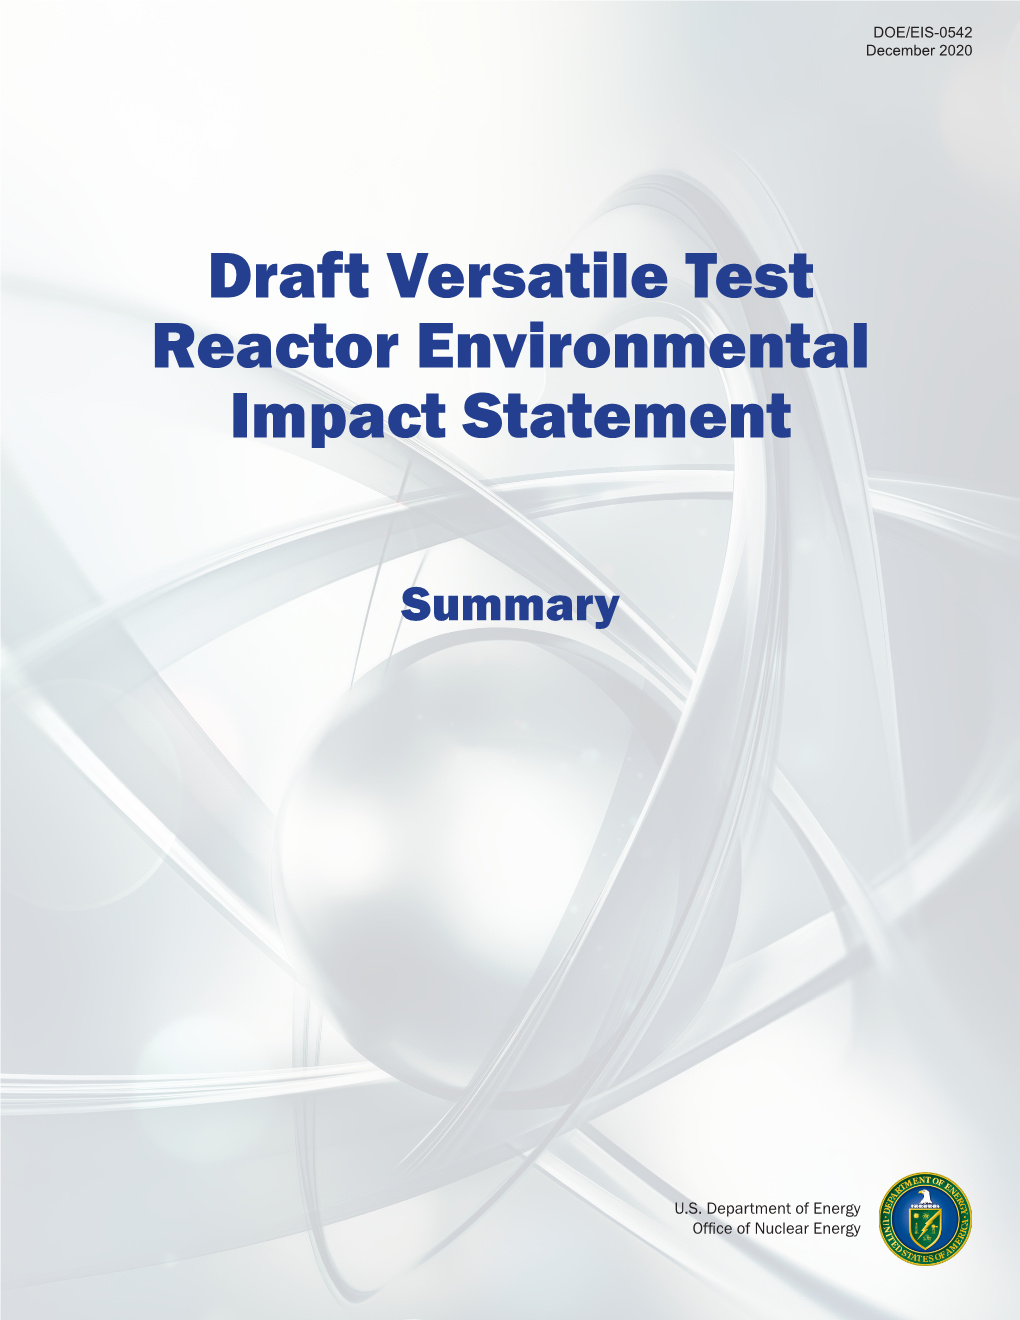 Draft Versatile Test Reactor Environmental Impact Statement